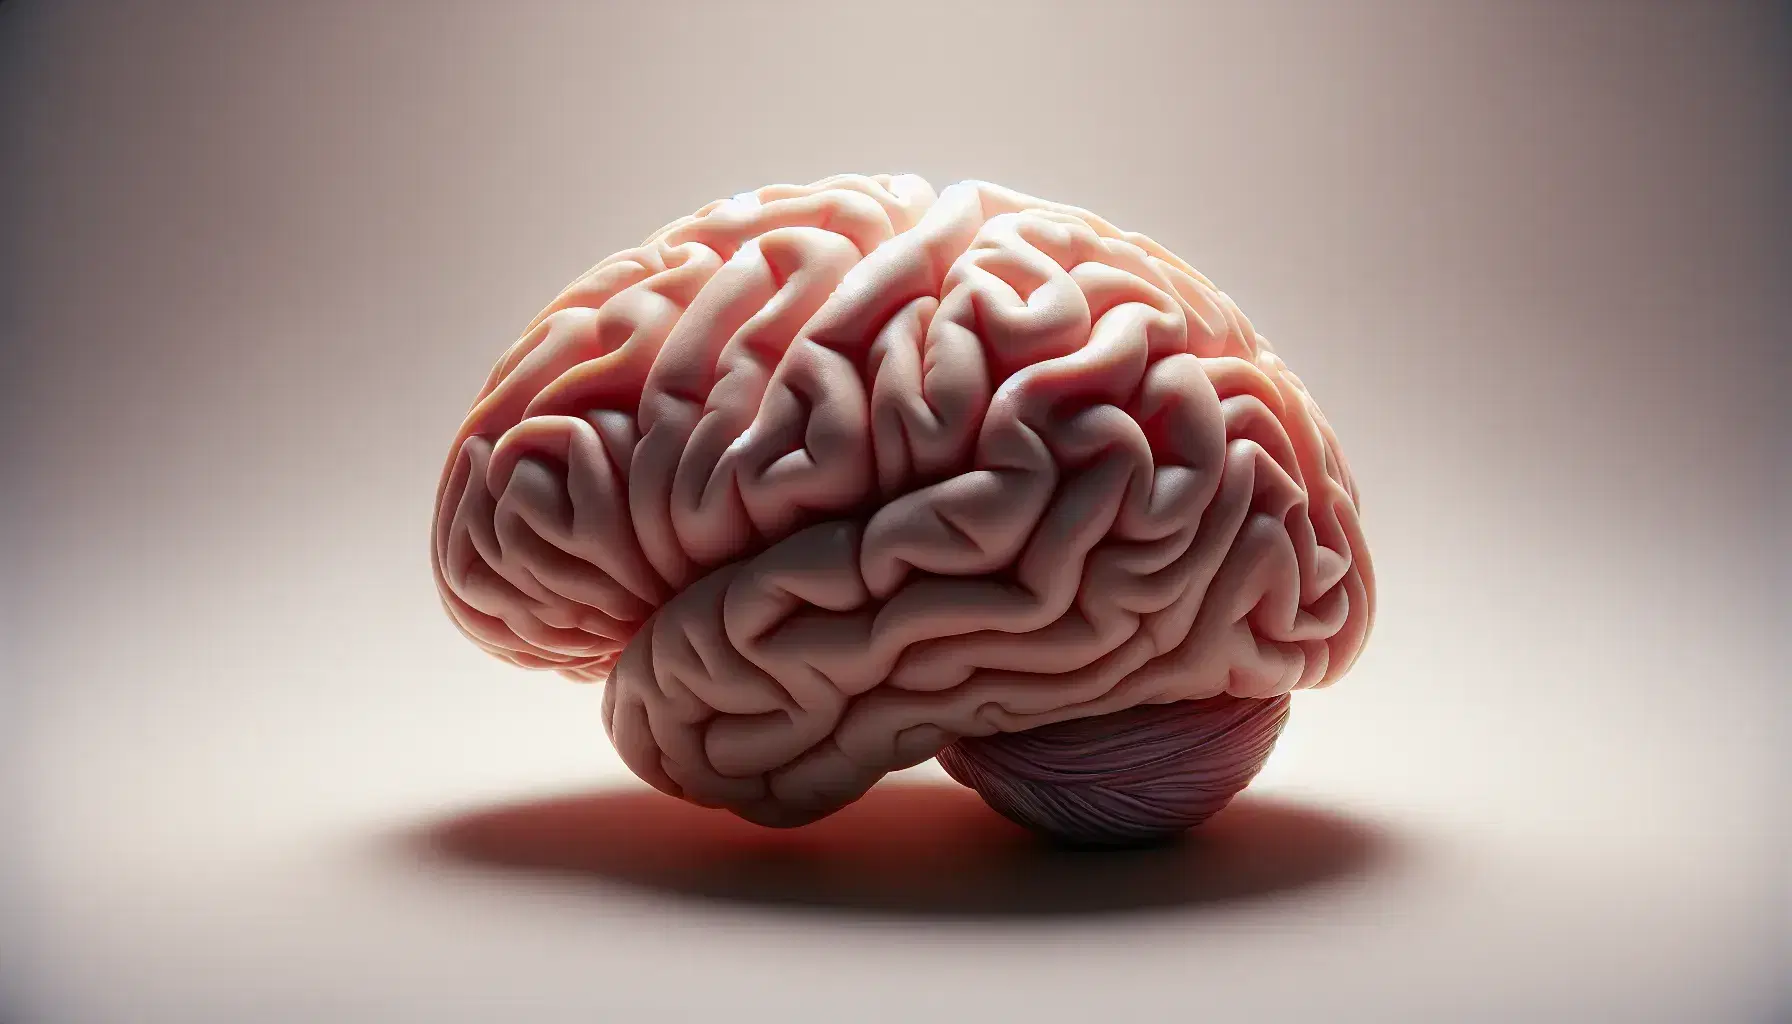 Vista superior de un cerebro humano realista destacando surcos y giros corticales en tonos rosados y grises, con iluminación suave que resalta su estructura tridimensional.